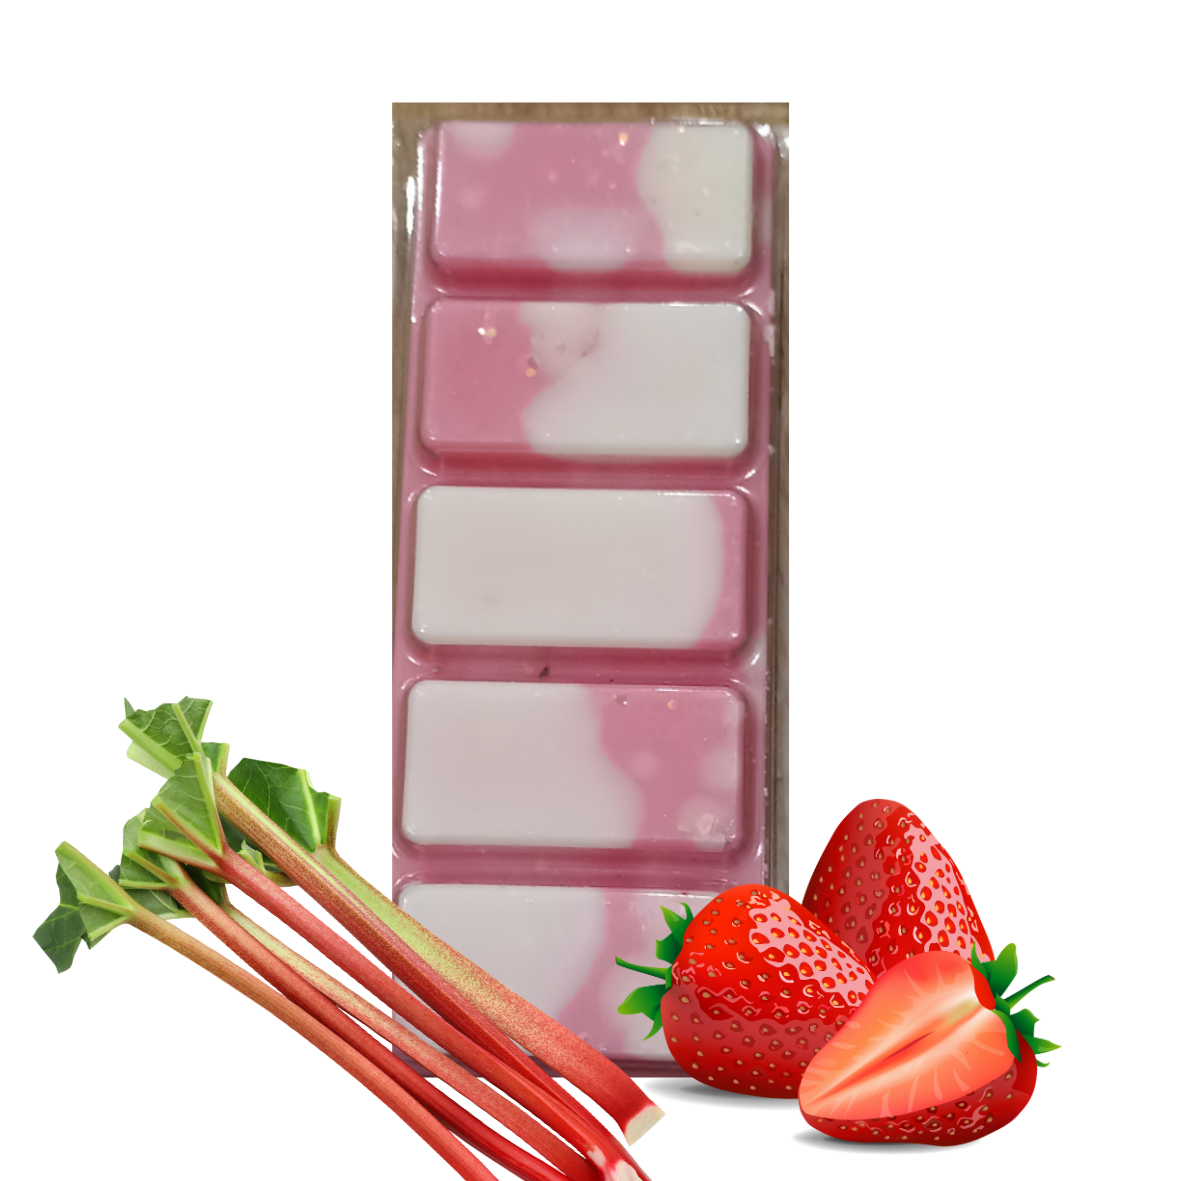 Tablette fraise rhubarbe